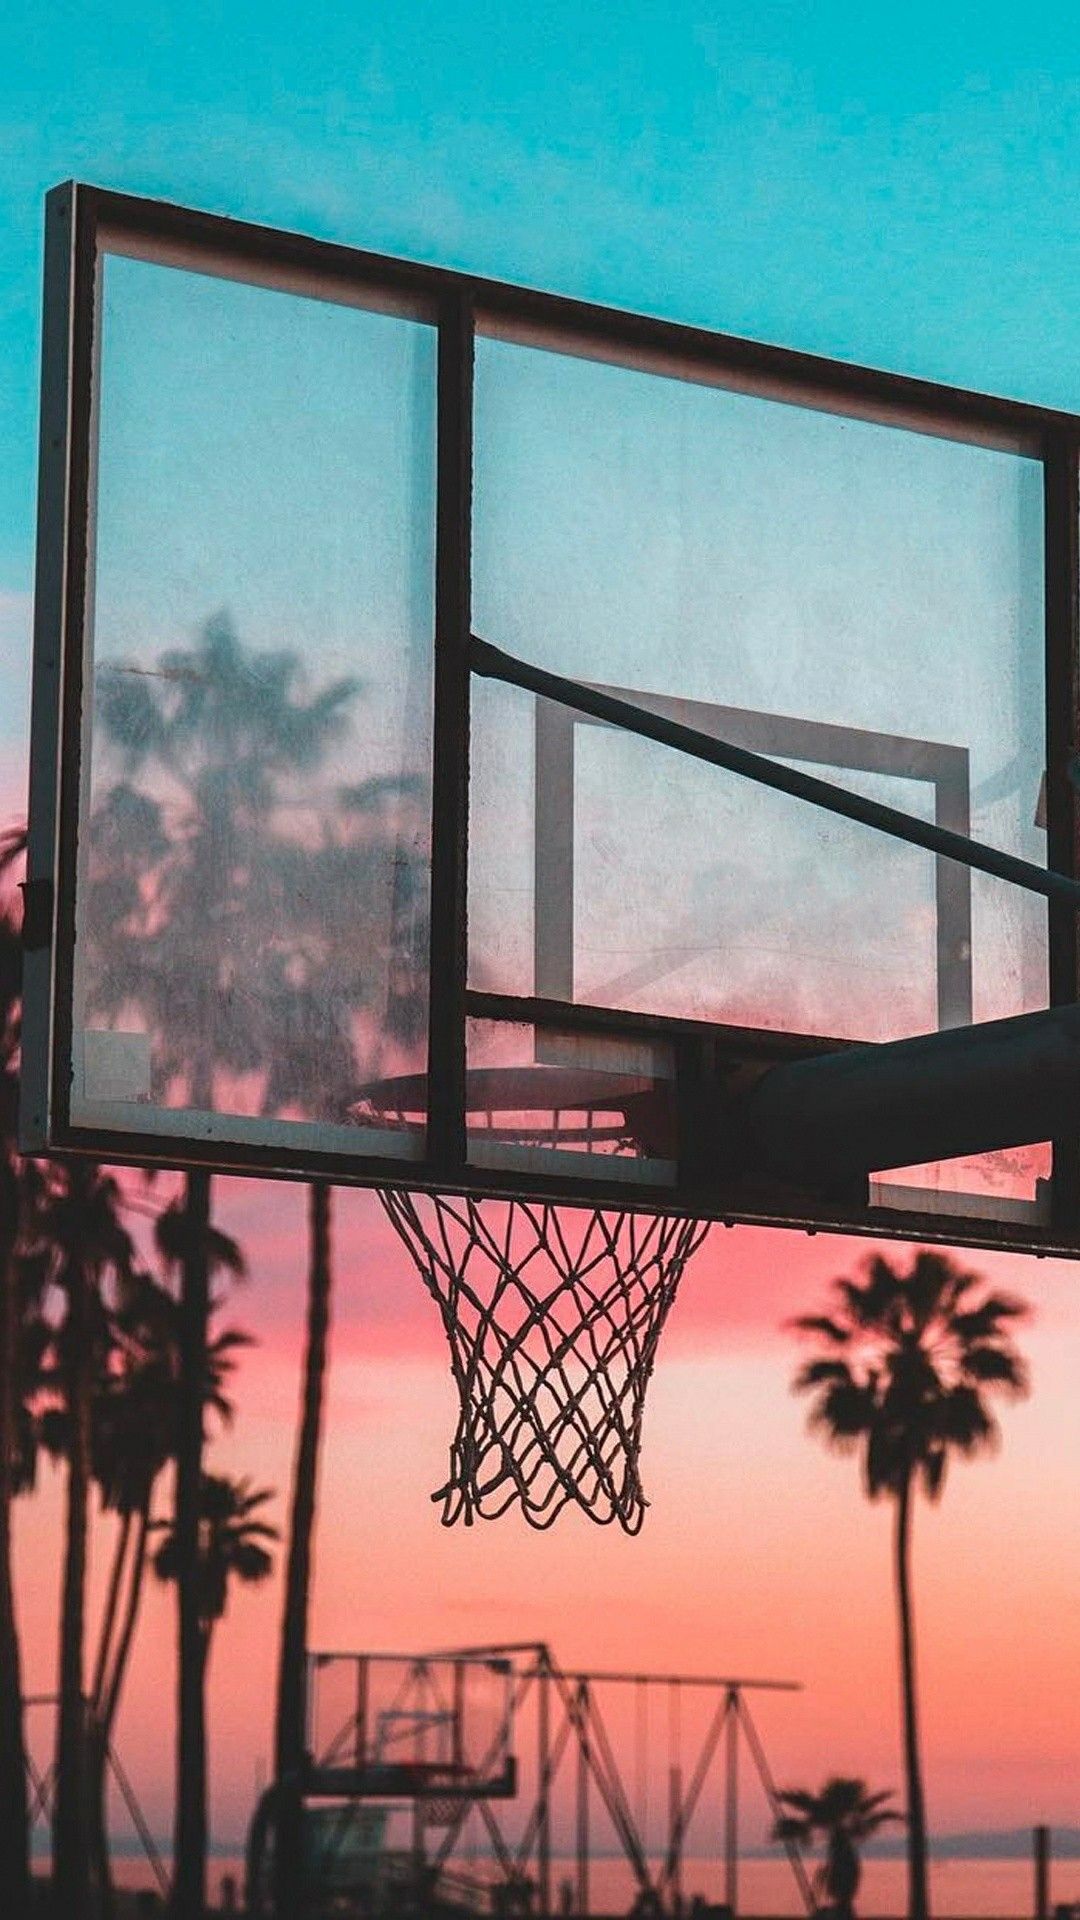 バスケットボールのフープの壁紙,バスケットボールフープ,空,バスケットボール,窓,木